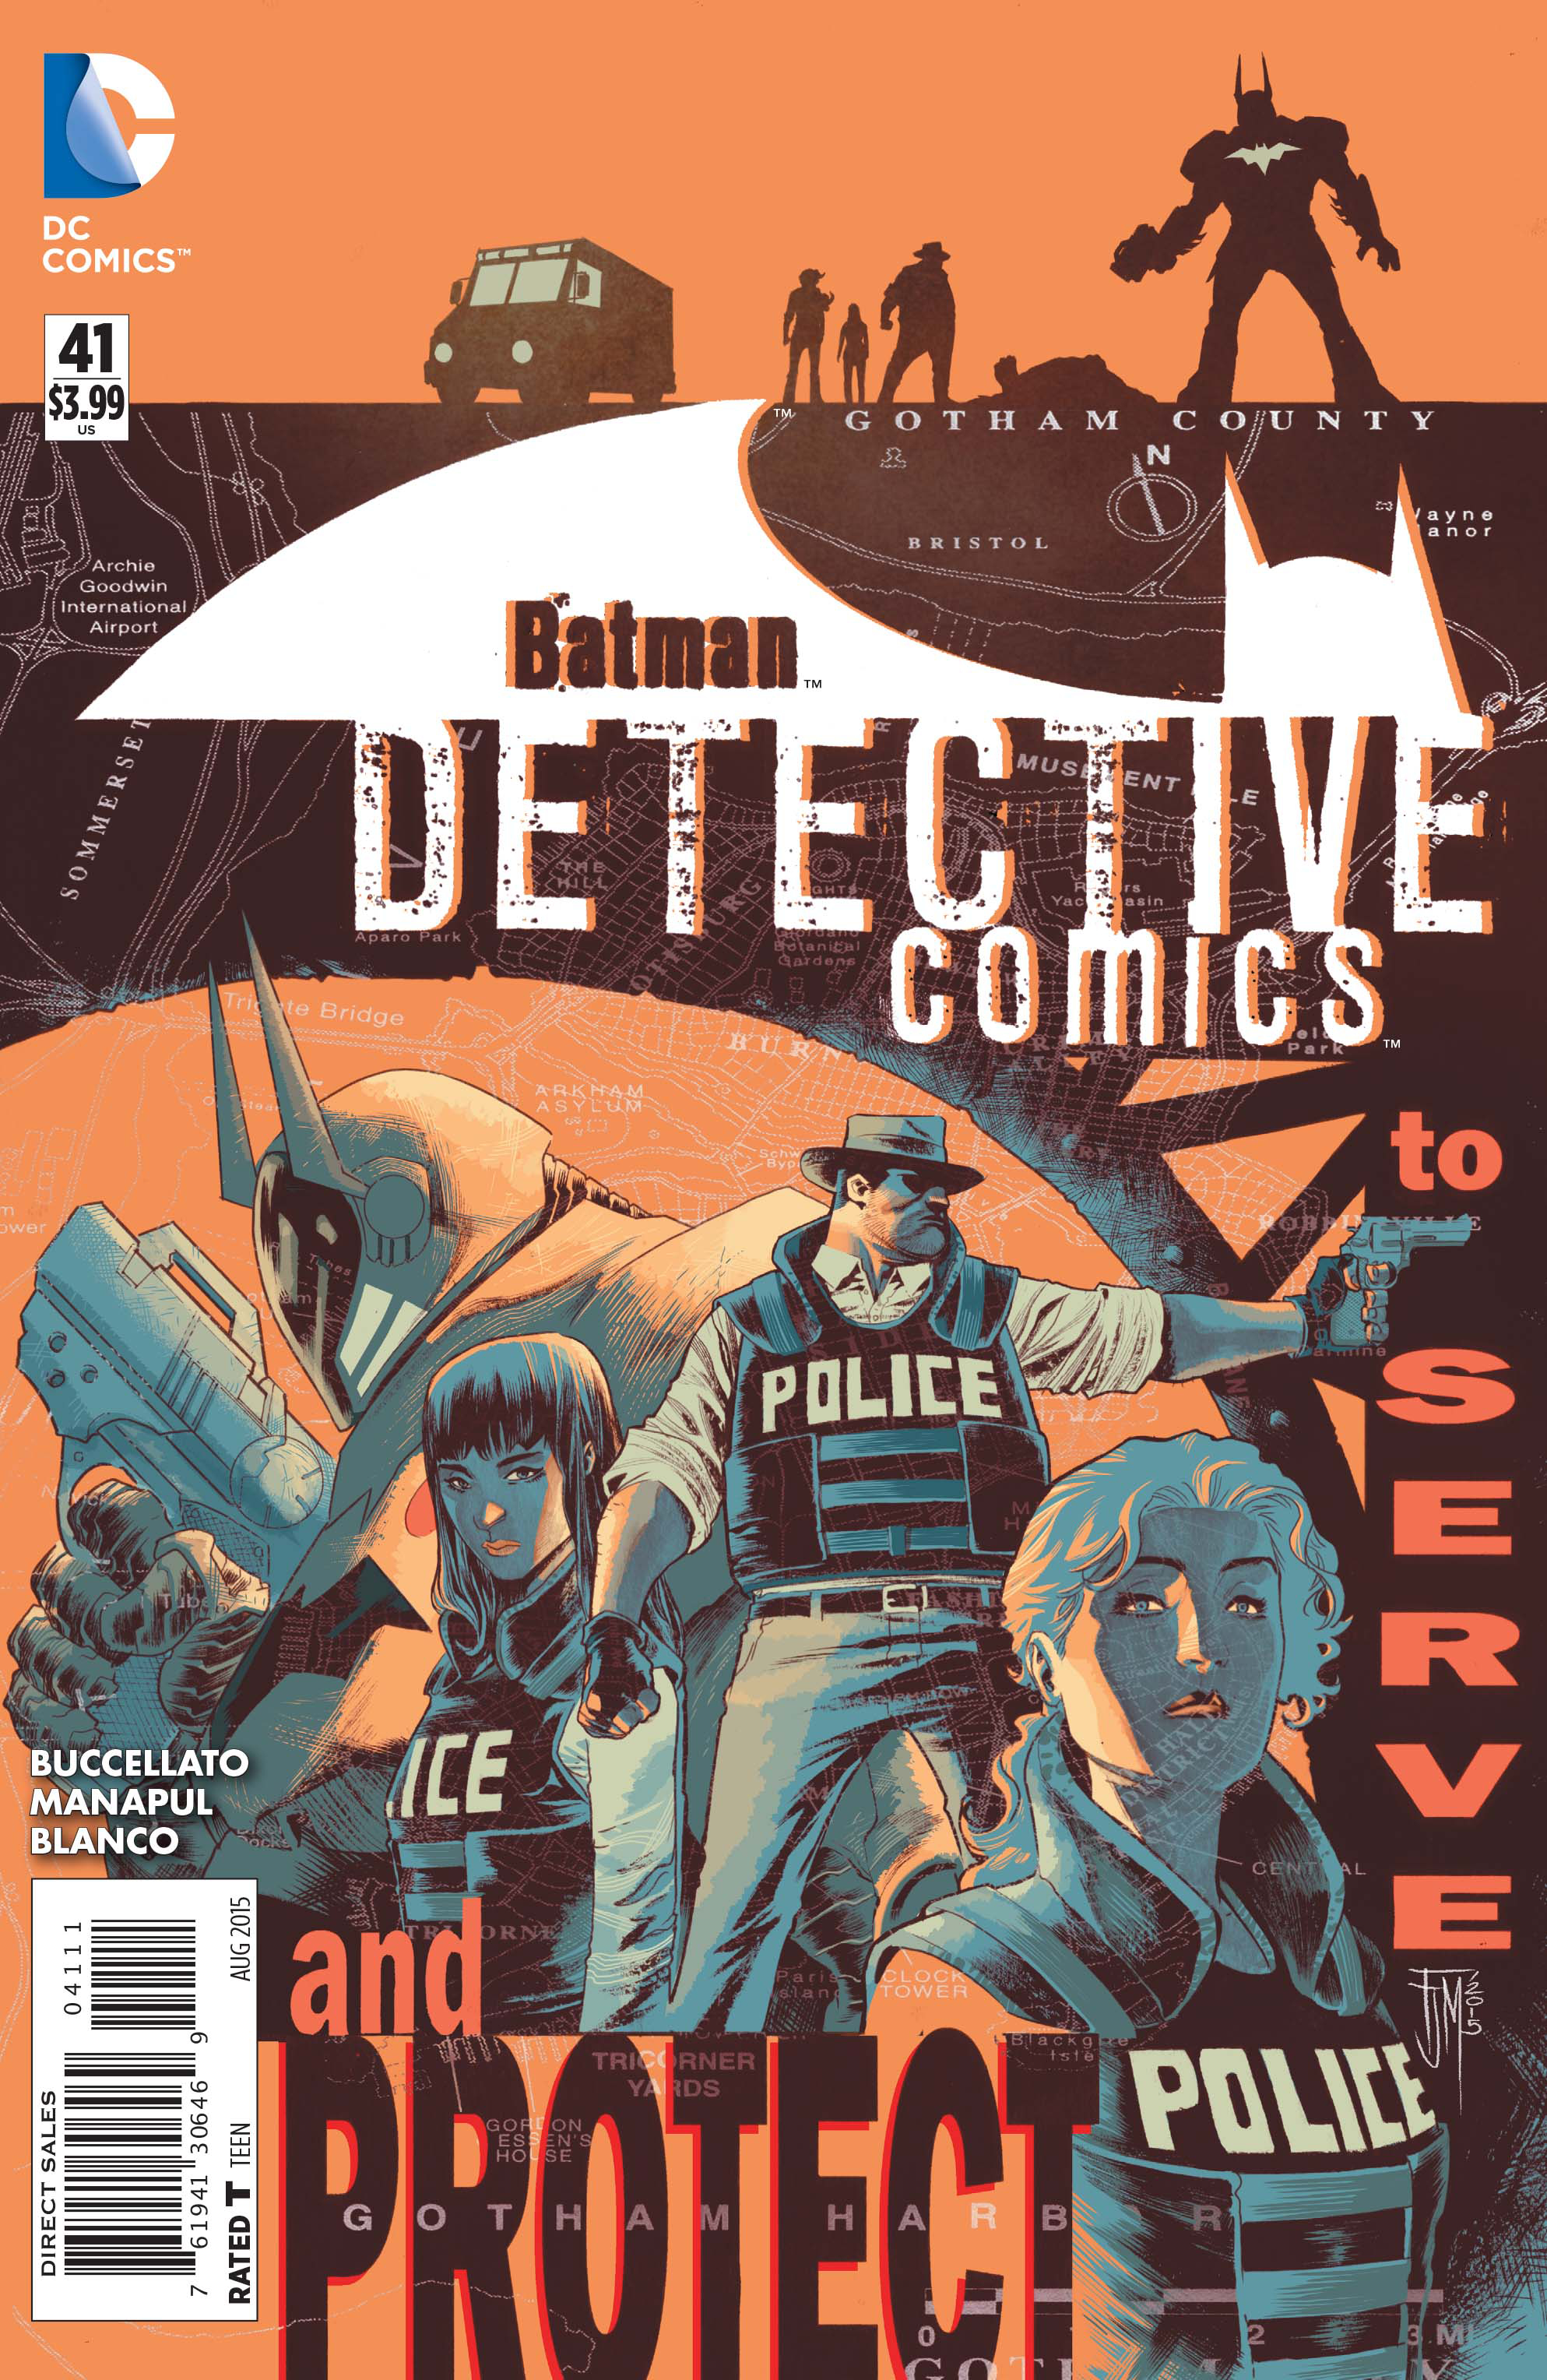 DETECTIVE COMICS #41